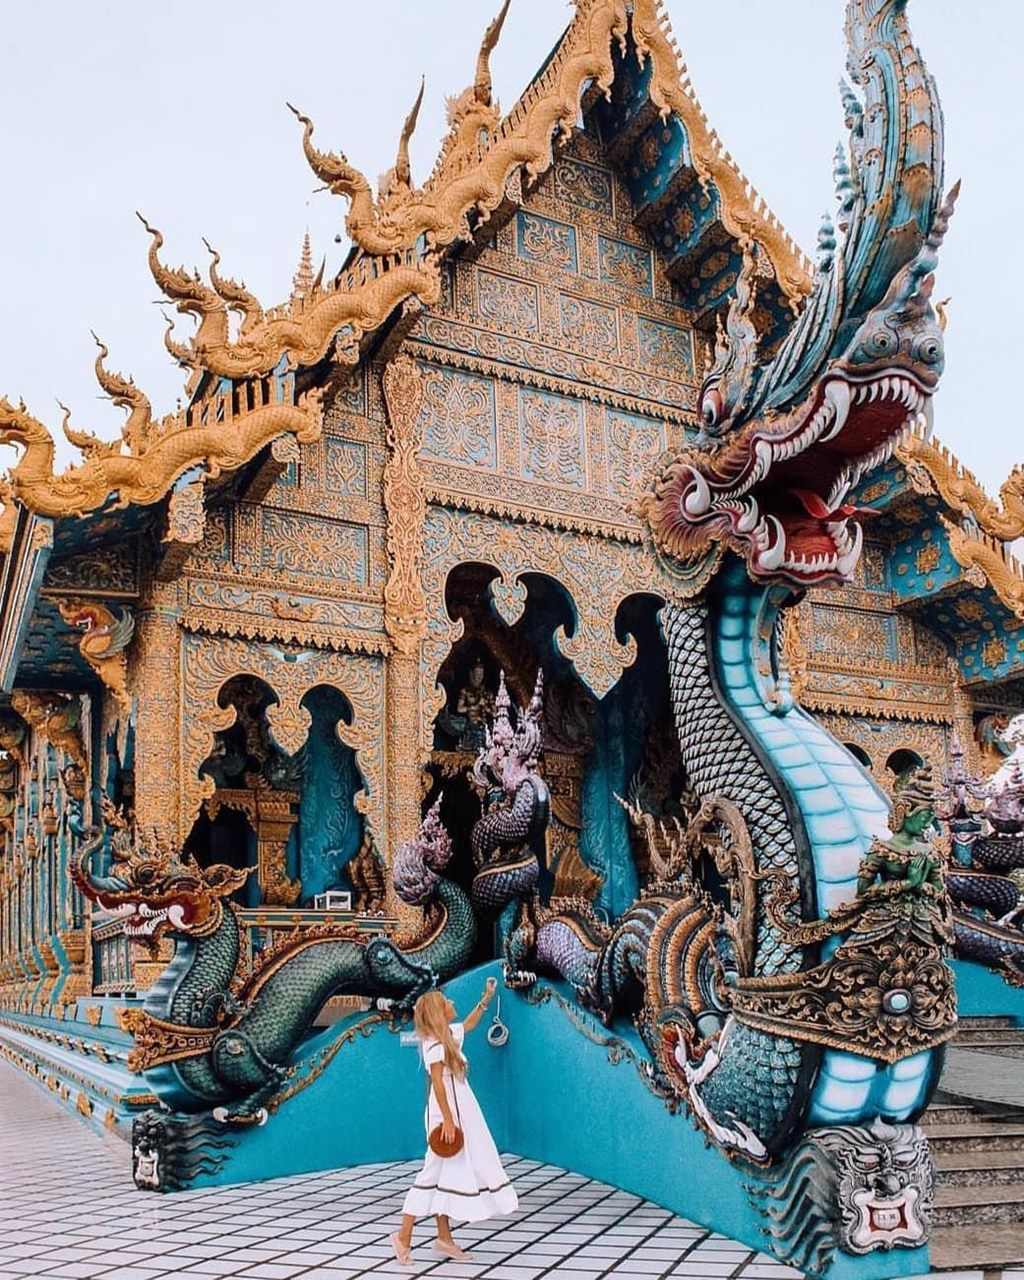 Ngôi chùa màu xanh độc nhất vô nhị ở Thái Lan